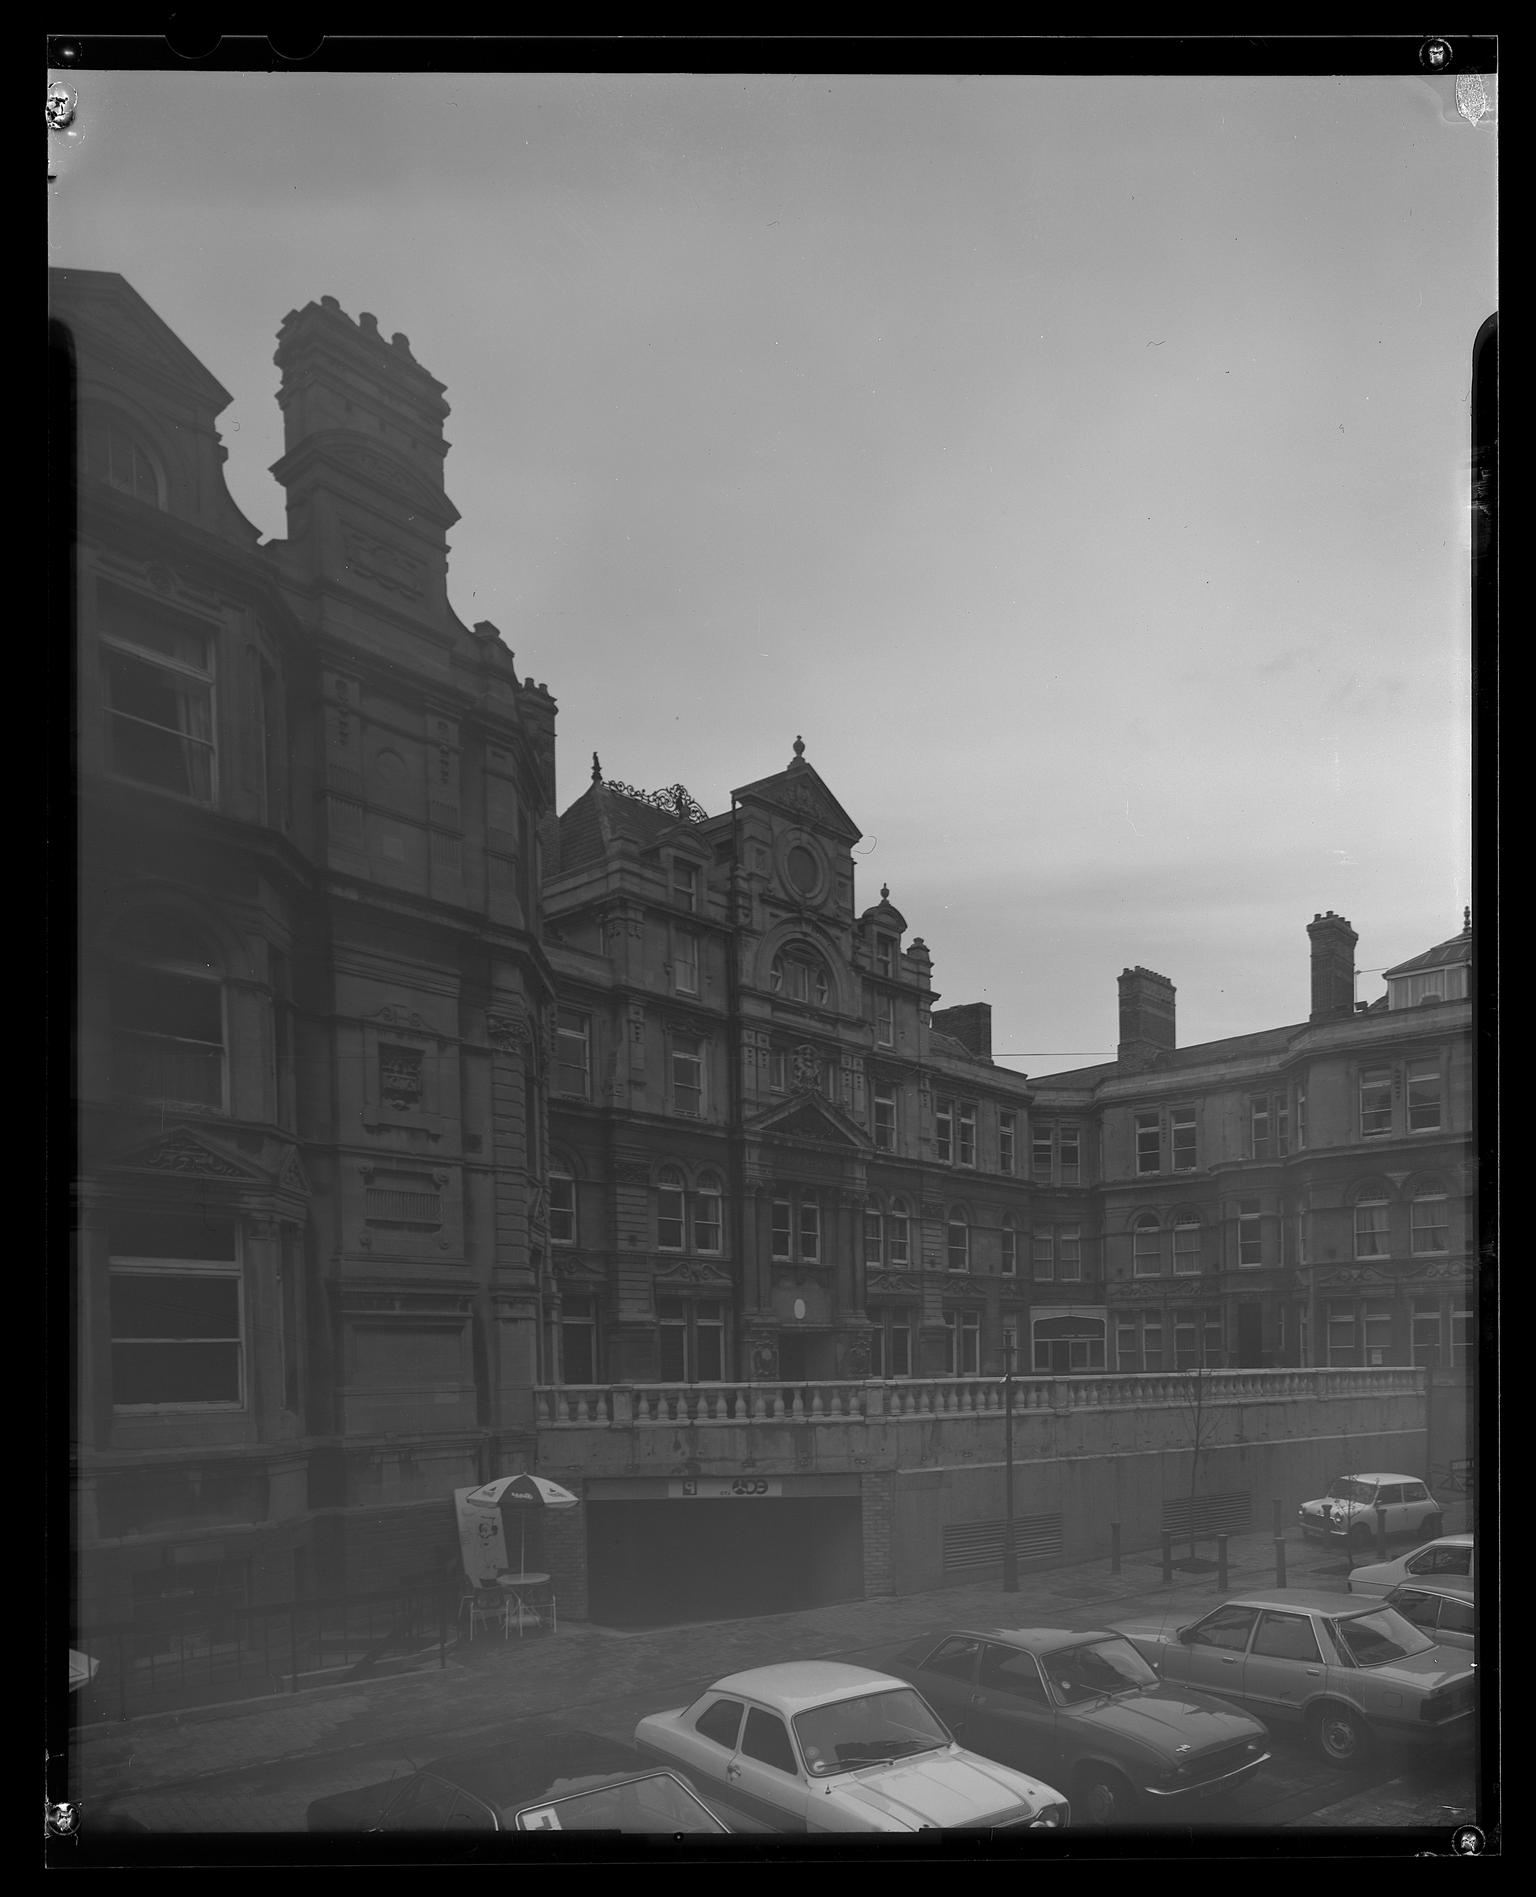 Coal Exchange, Cardiff, film negative